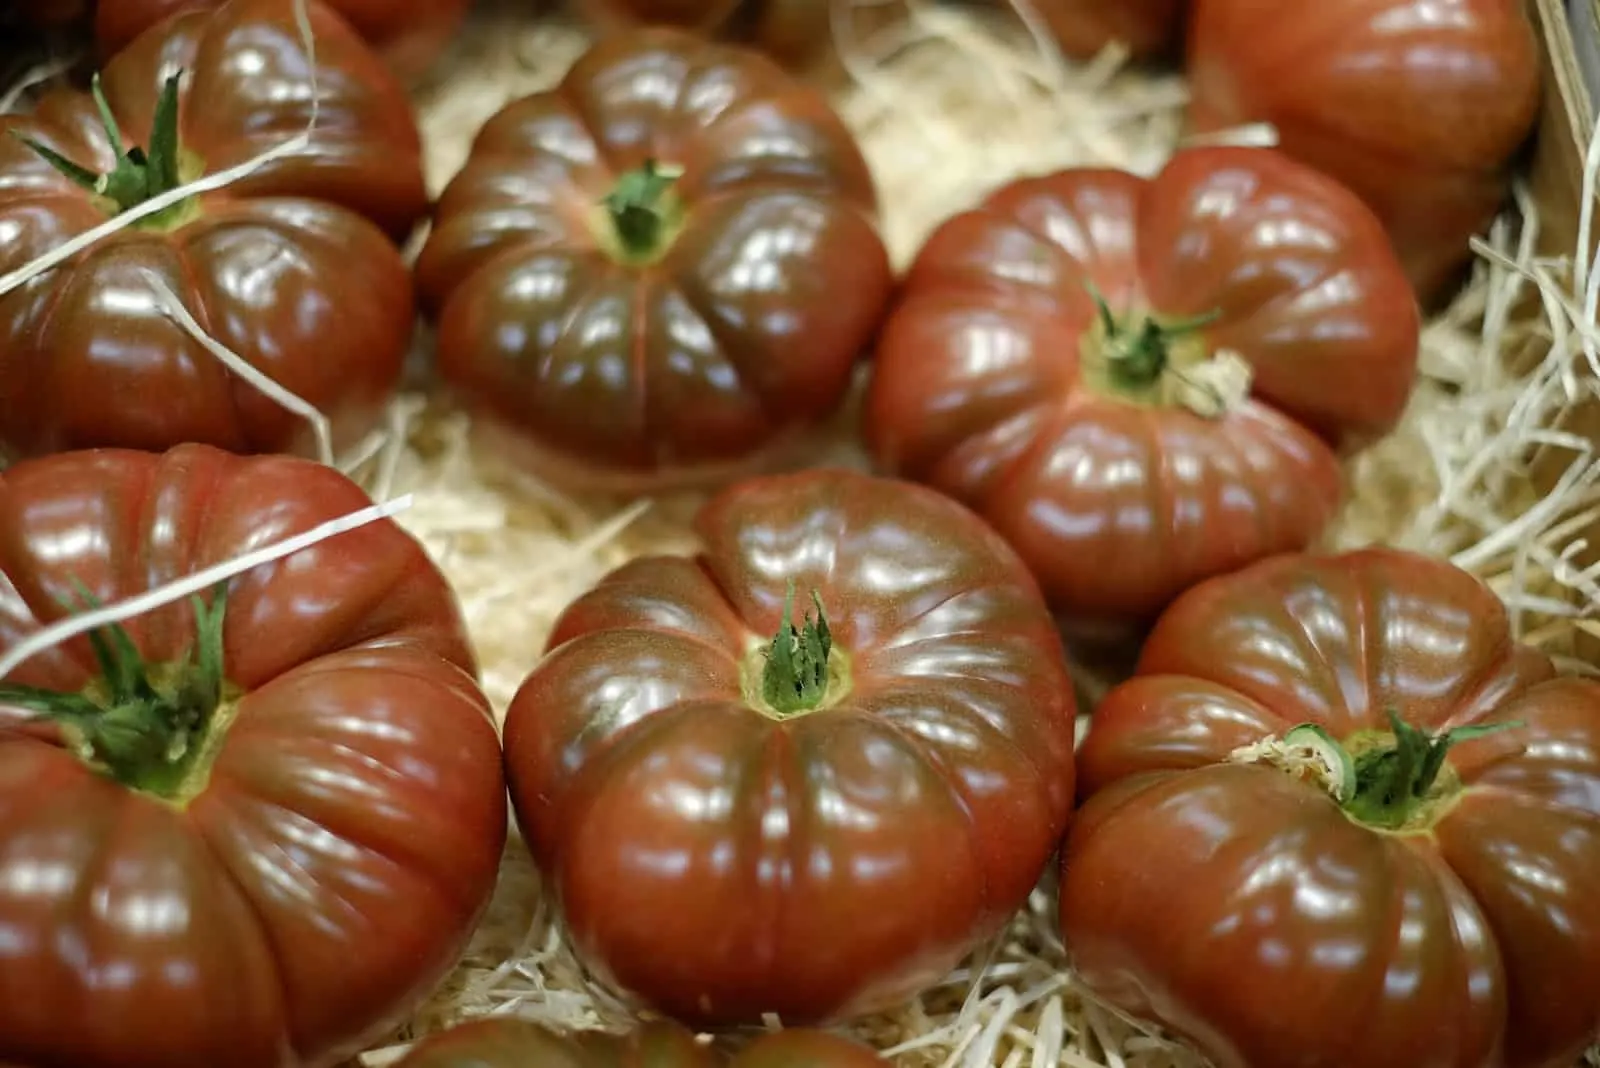 Cherokee Purple tomatos